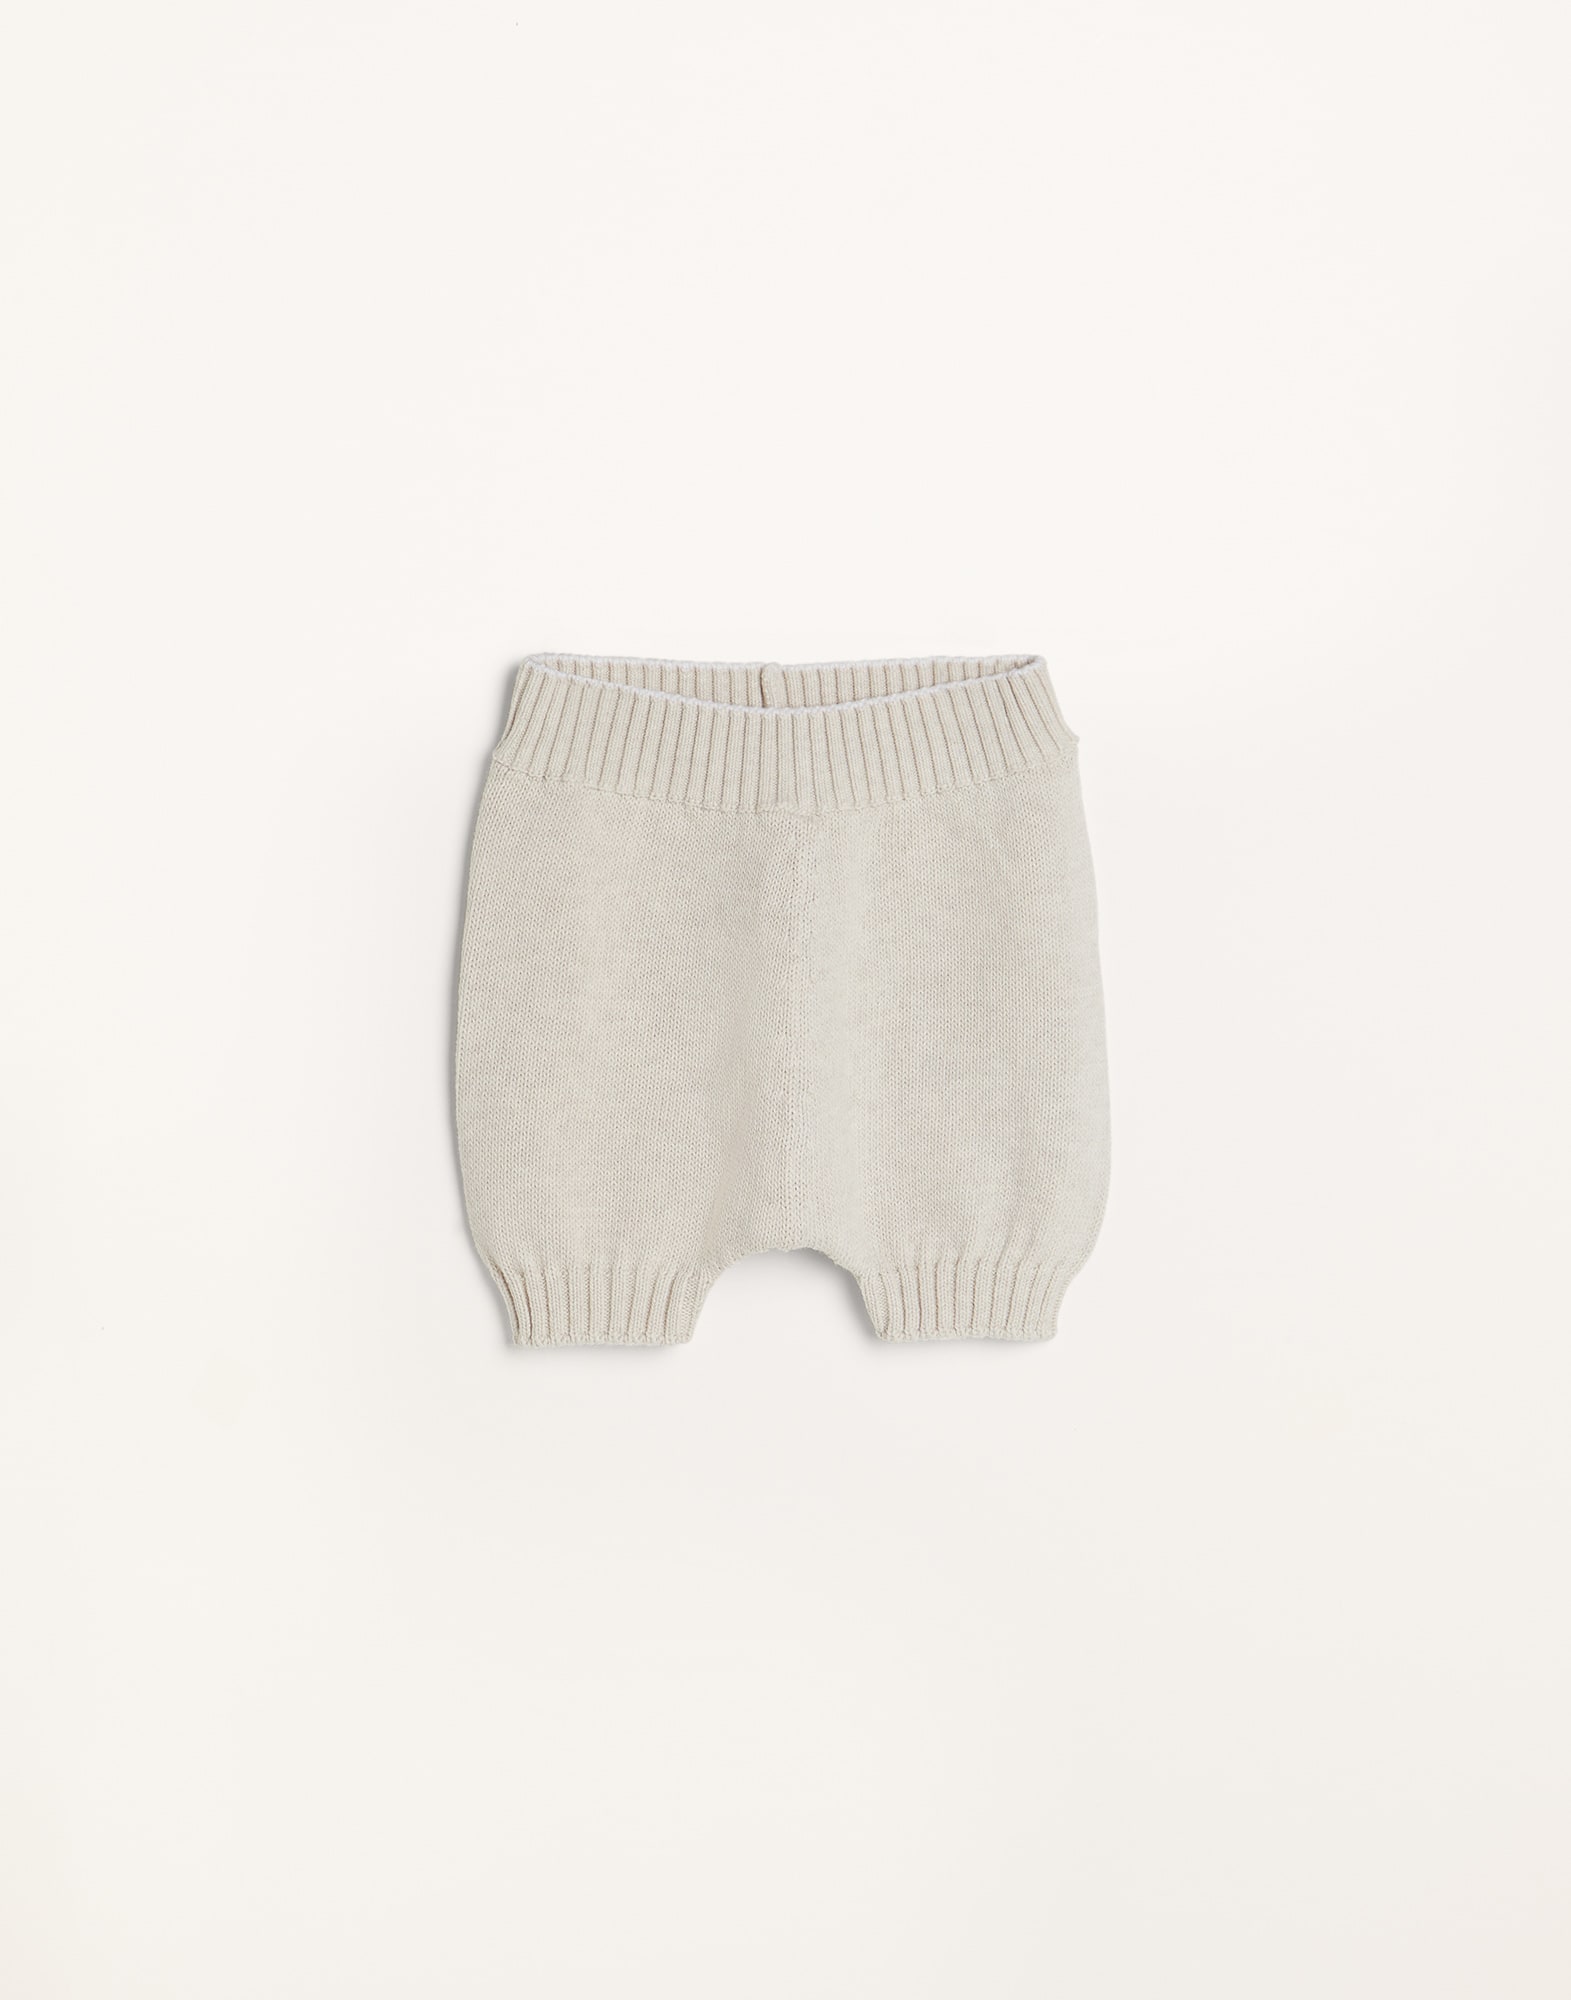 Brunello Cucinelli Kids knitted cotton shorts - Grey